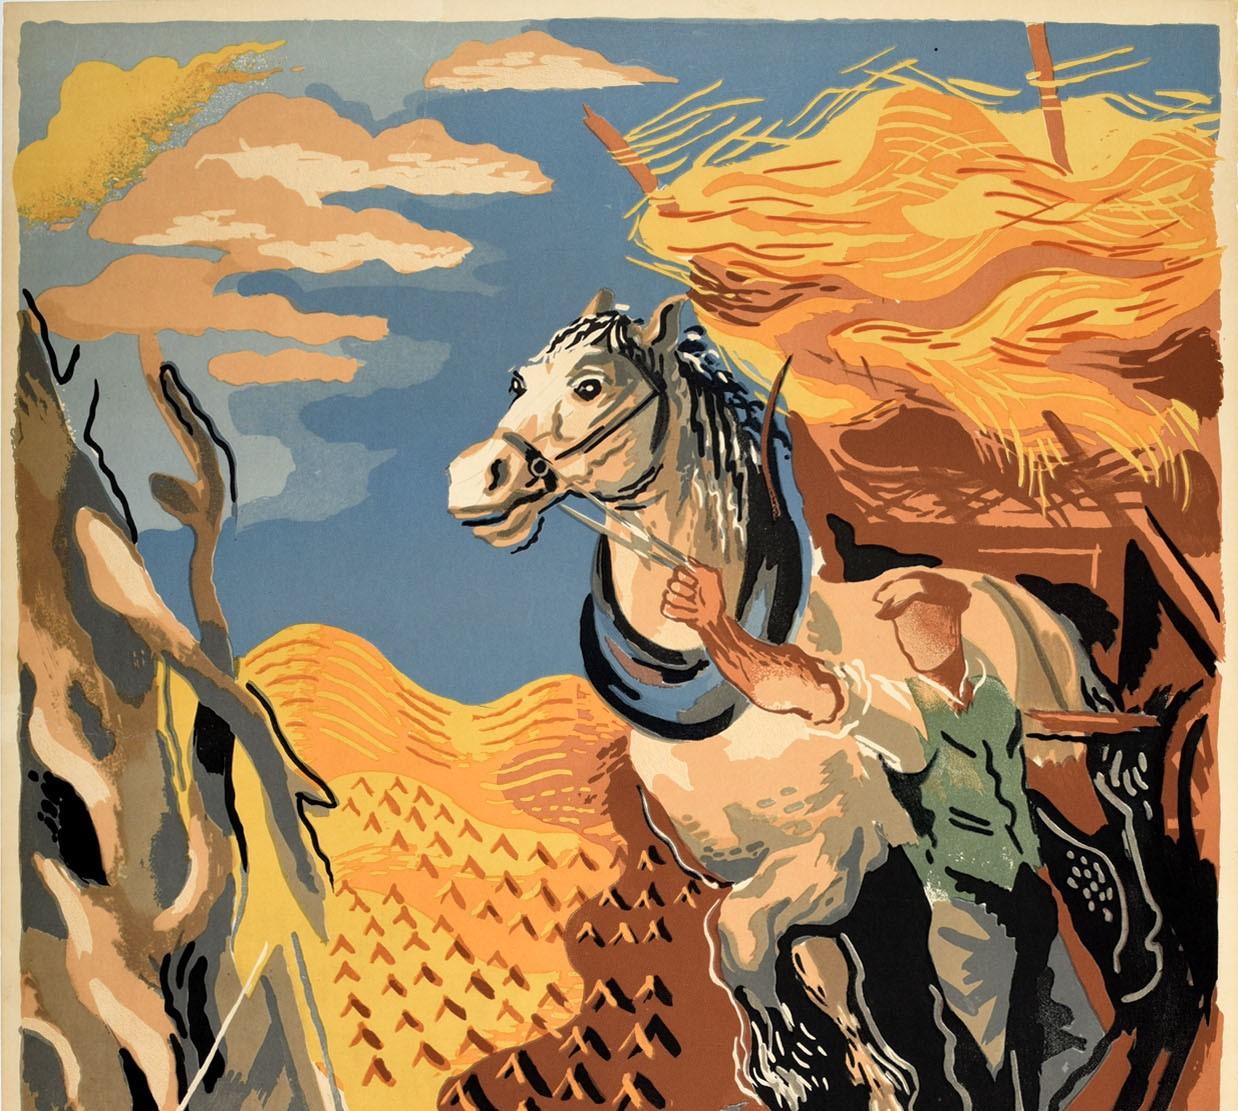 Original London Transport Reiseplakat - South - mit einem Kunstwerk von John Mansbridge (1901-1981), das eine ländliche Ansicht eines Mannes zeigt, der ein Pferd mit Heu auf dem Wagen führt, mit landwirtschaftlichen Feldern im Hintergrund unter dem